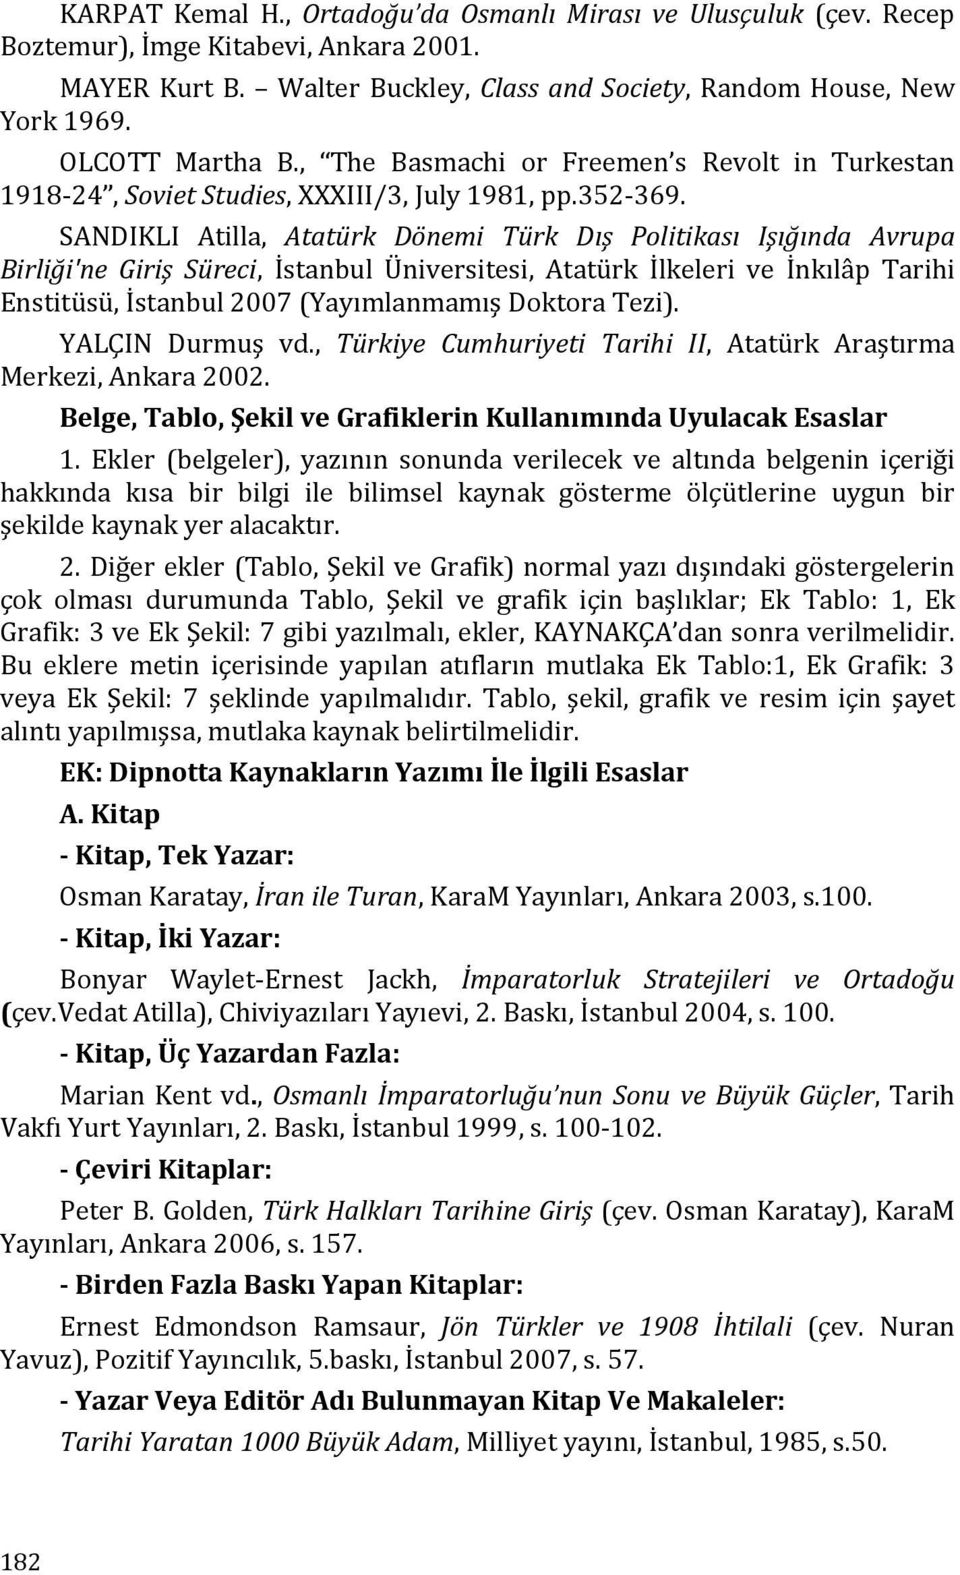 SANDIKLI Atilla, Atatürk Dönemi Türk Dış Politikası Işığında Avrupa Birliği'ne Giriş Süreci, İstanbul Üniversitesi, Atatürk İlkeleri ve İnkılâp Tarihi Enstitüsü, İstanbul 2007 (Yayımlanmamış Doktora